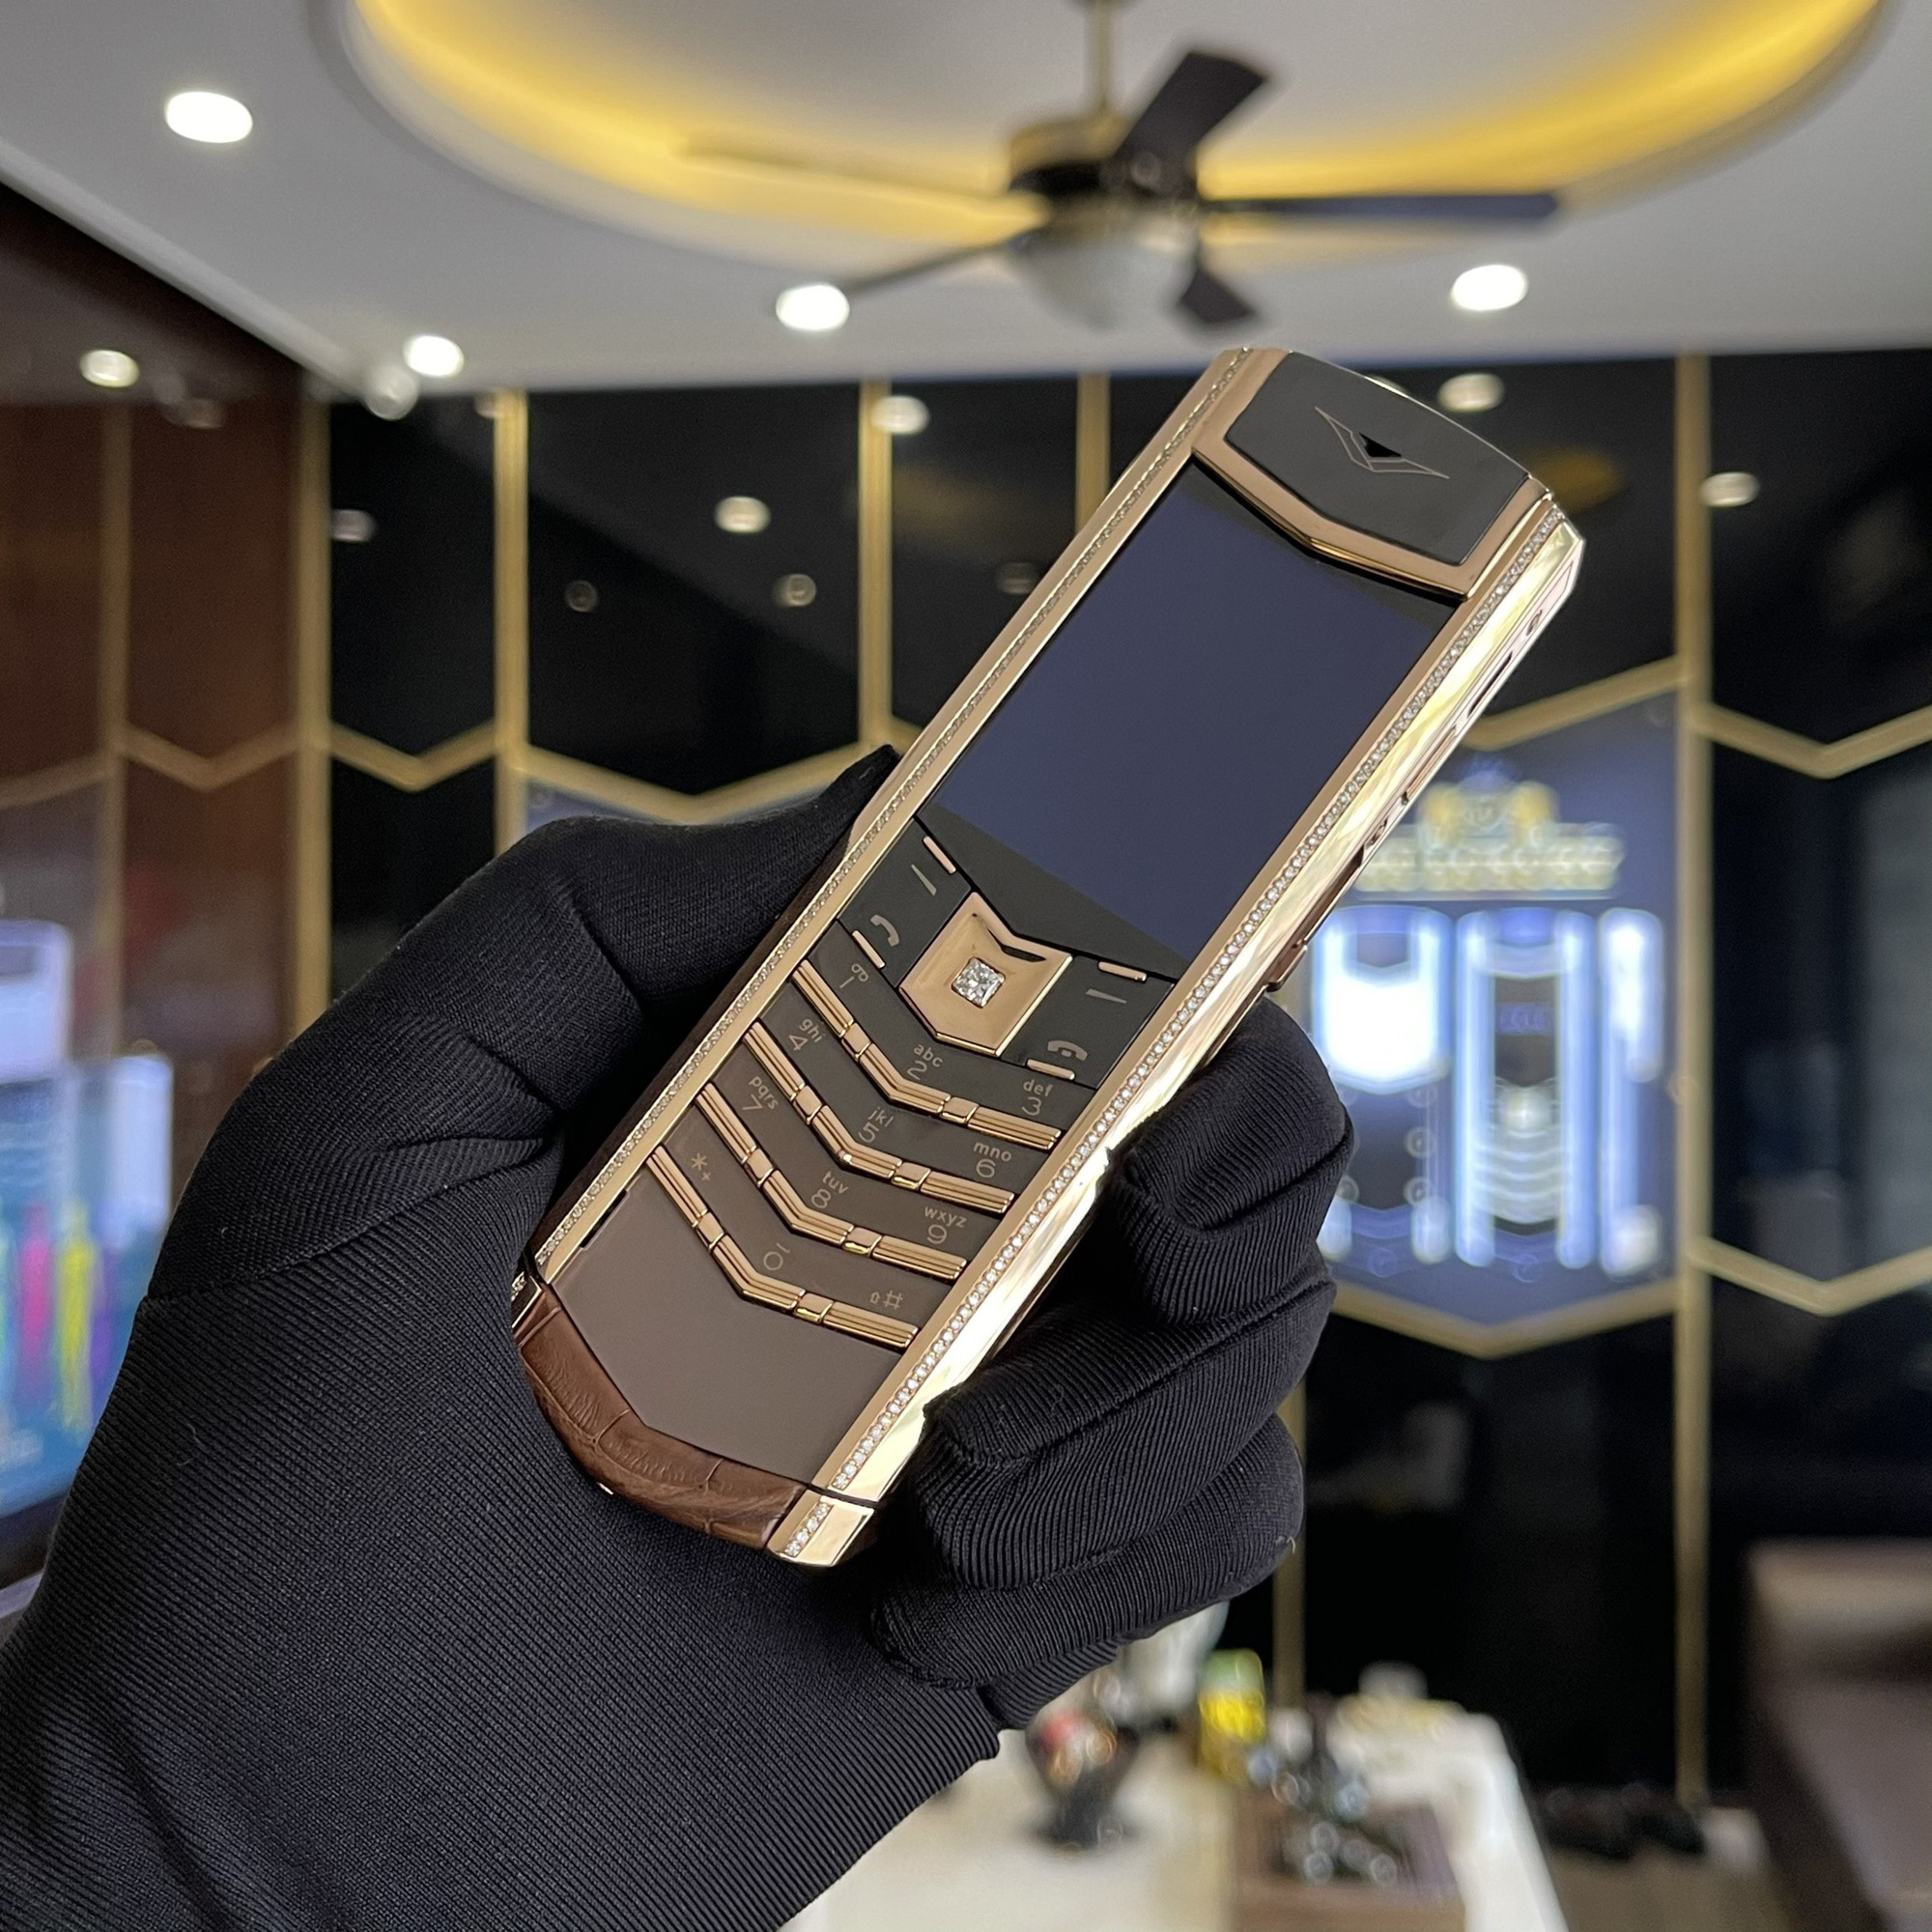 Điện thoại thông minh của Vertu được bọc trong các vật liệu như da cá sấu, bạch kim hoặc vàng, trong khi một số thậm chí còn lấp lánh bằng ngọc bích. Ảnh: @AFP.